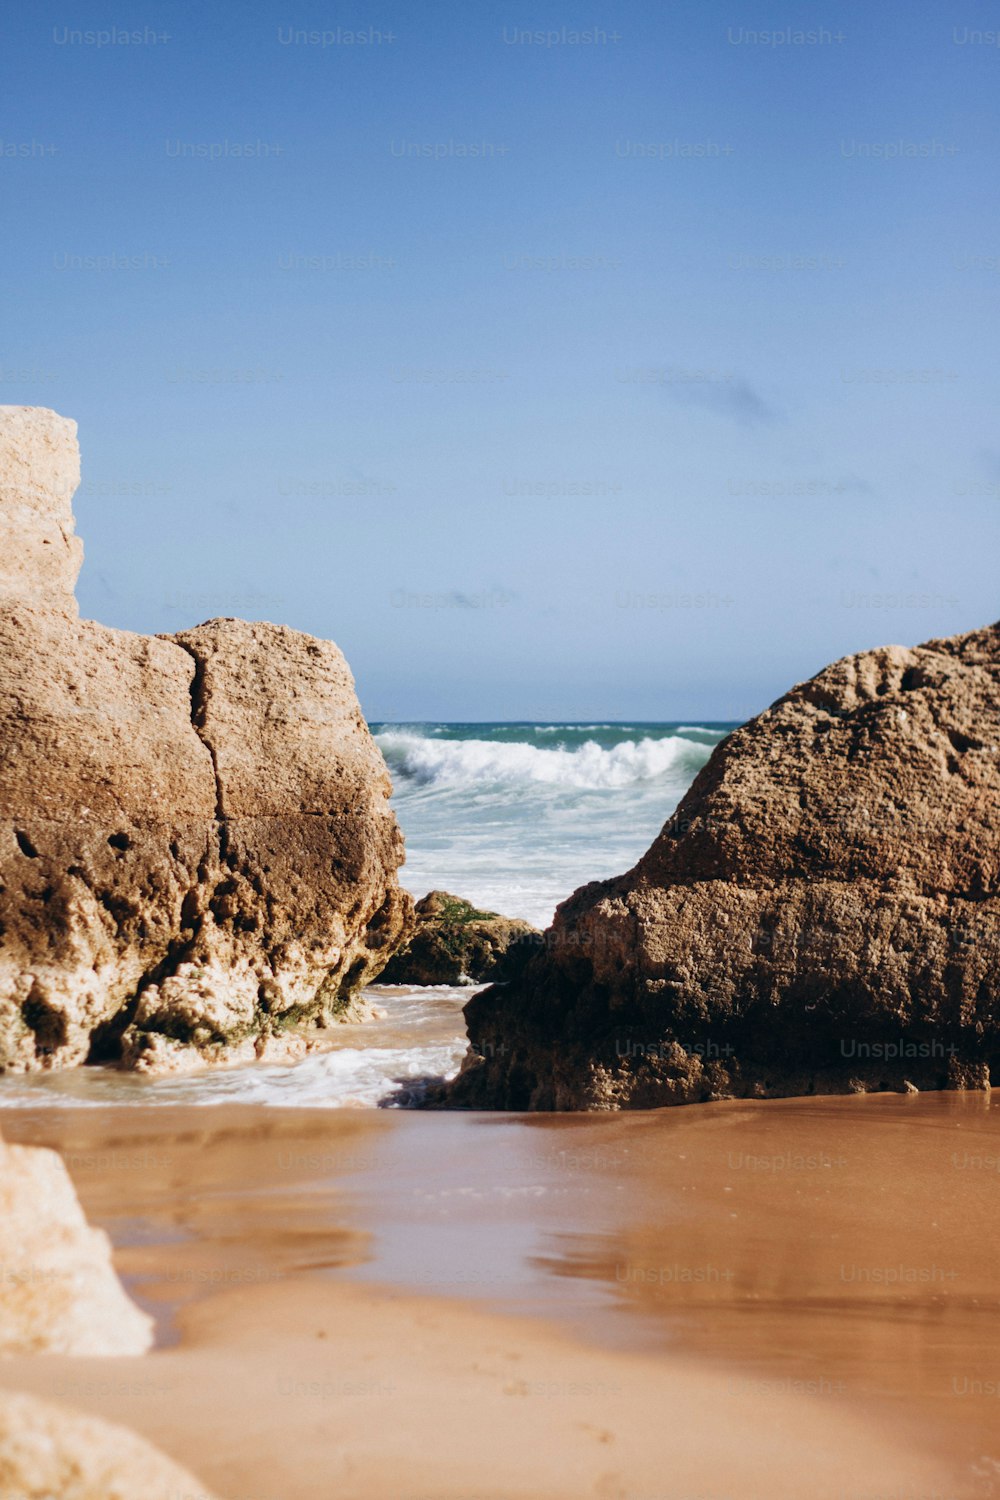 Une formation rocheuse sur une plage près de l’océan